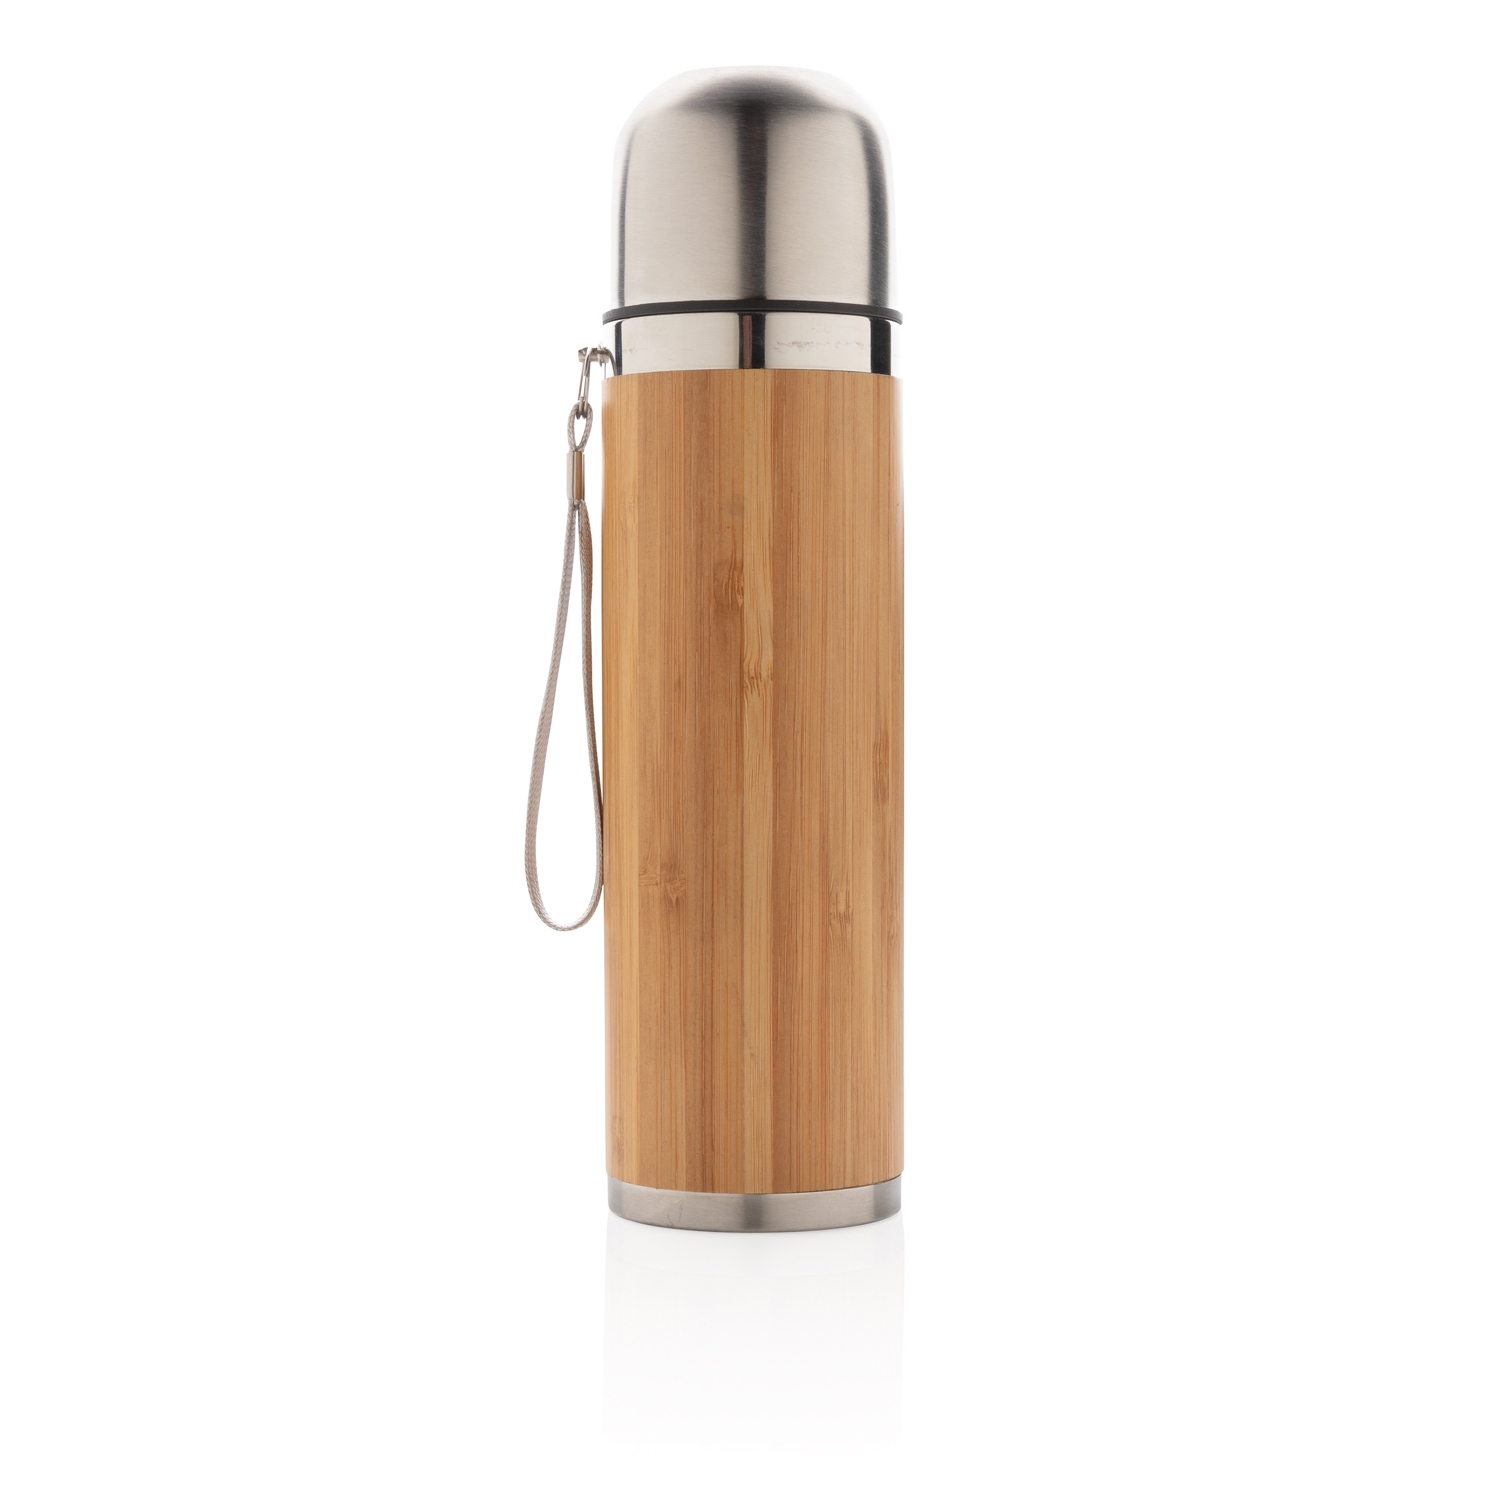 Герметичный вакуумный термос для путешествий Bamboo, 450 мл, коричневый, дерево, металл